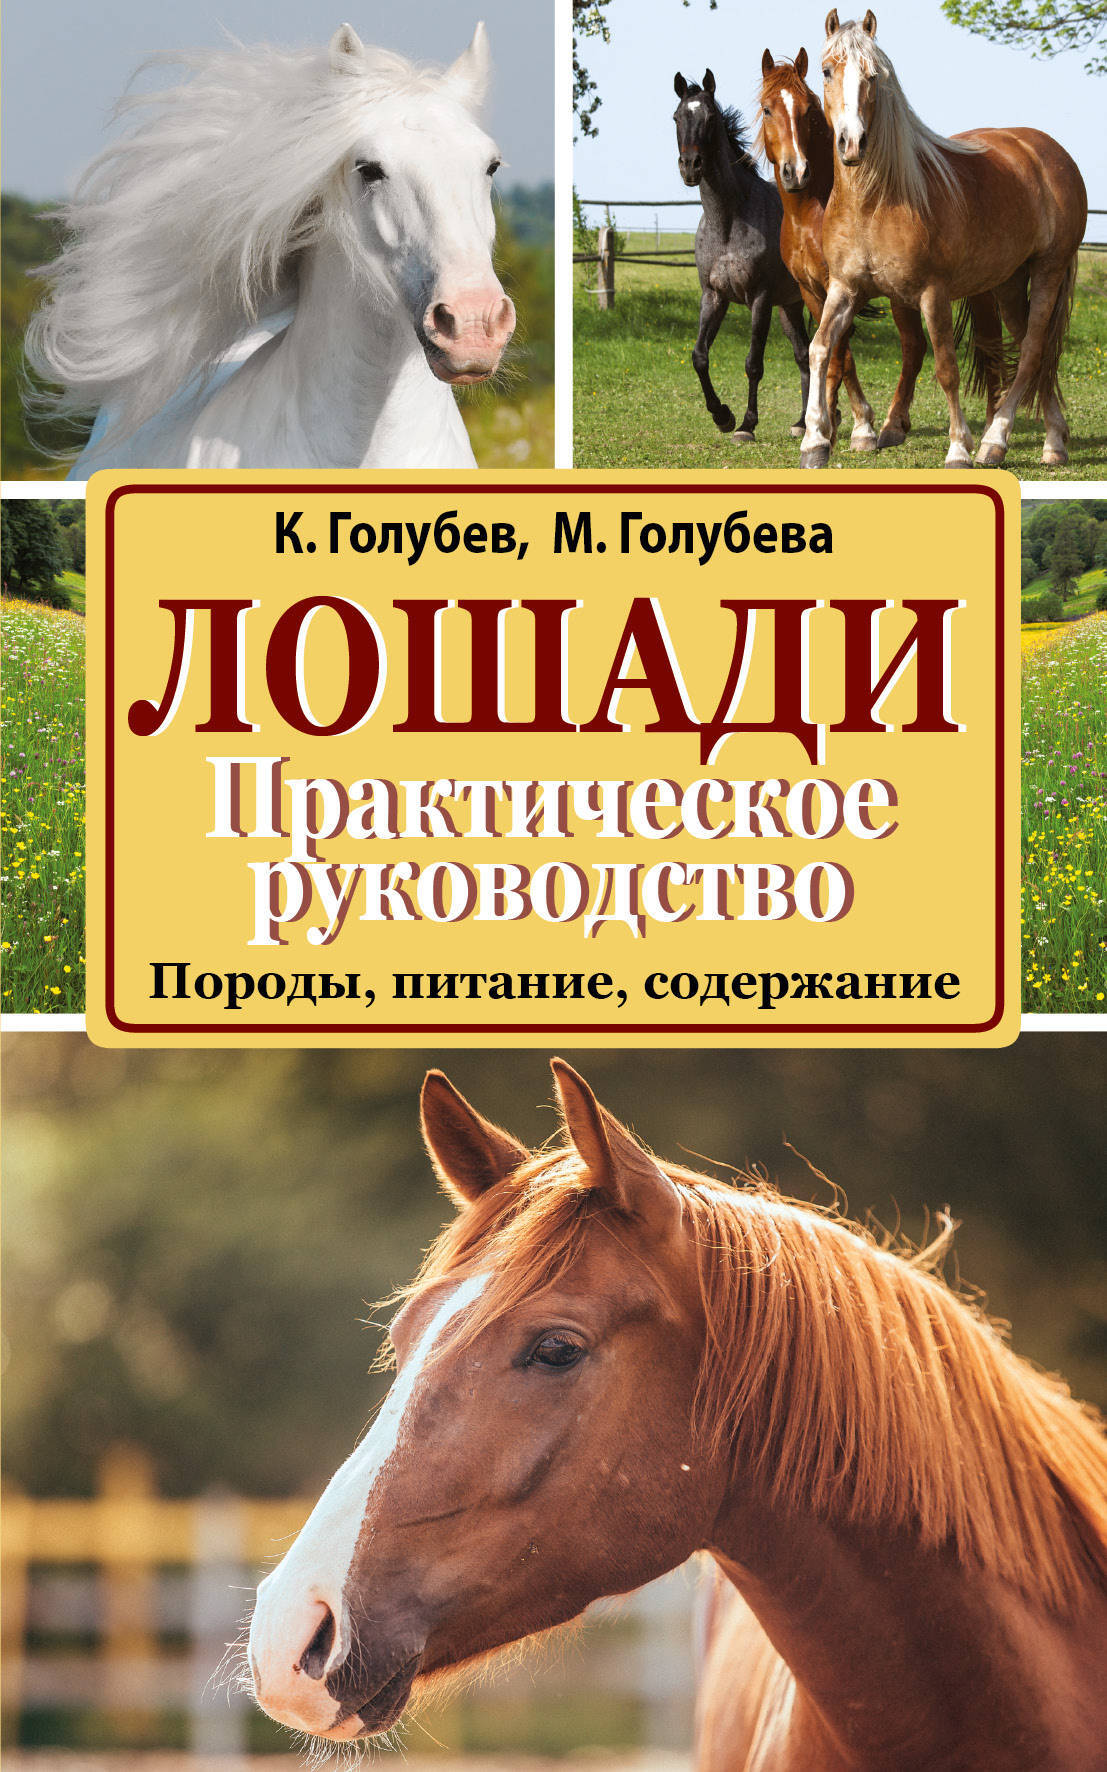 Книги верховая. Книги про лошадей. Книга кони. Книги про лошадей Художественные. Книги Художественные про коней.